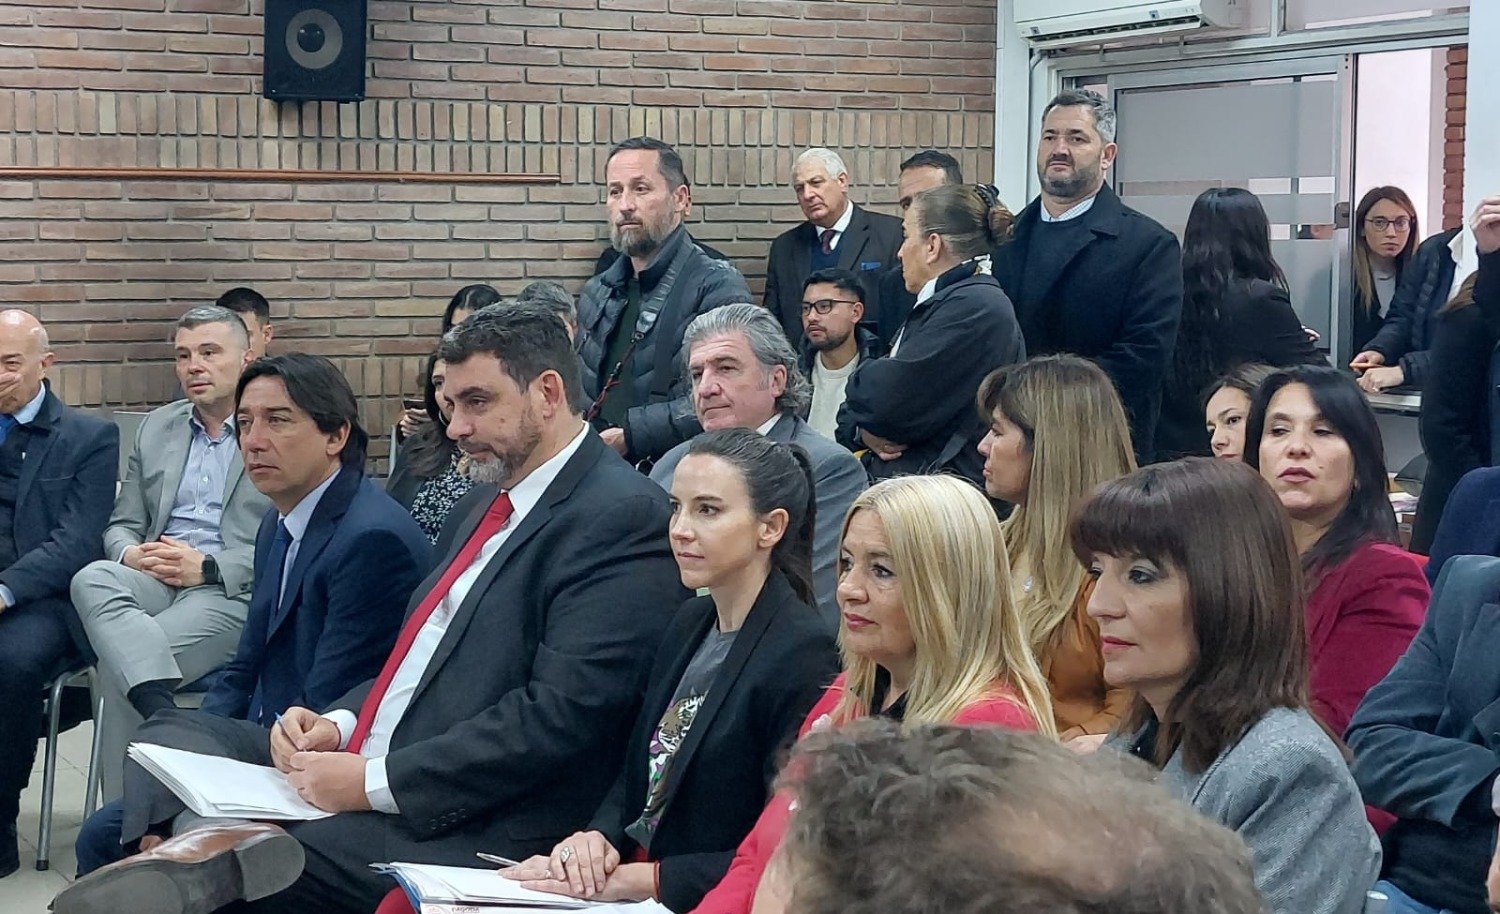  Reforma judicial: los jueces Adaro y Palermo opinaron sobre el proyecto